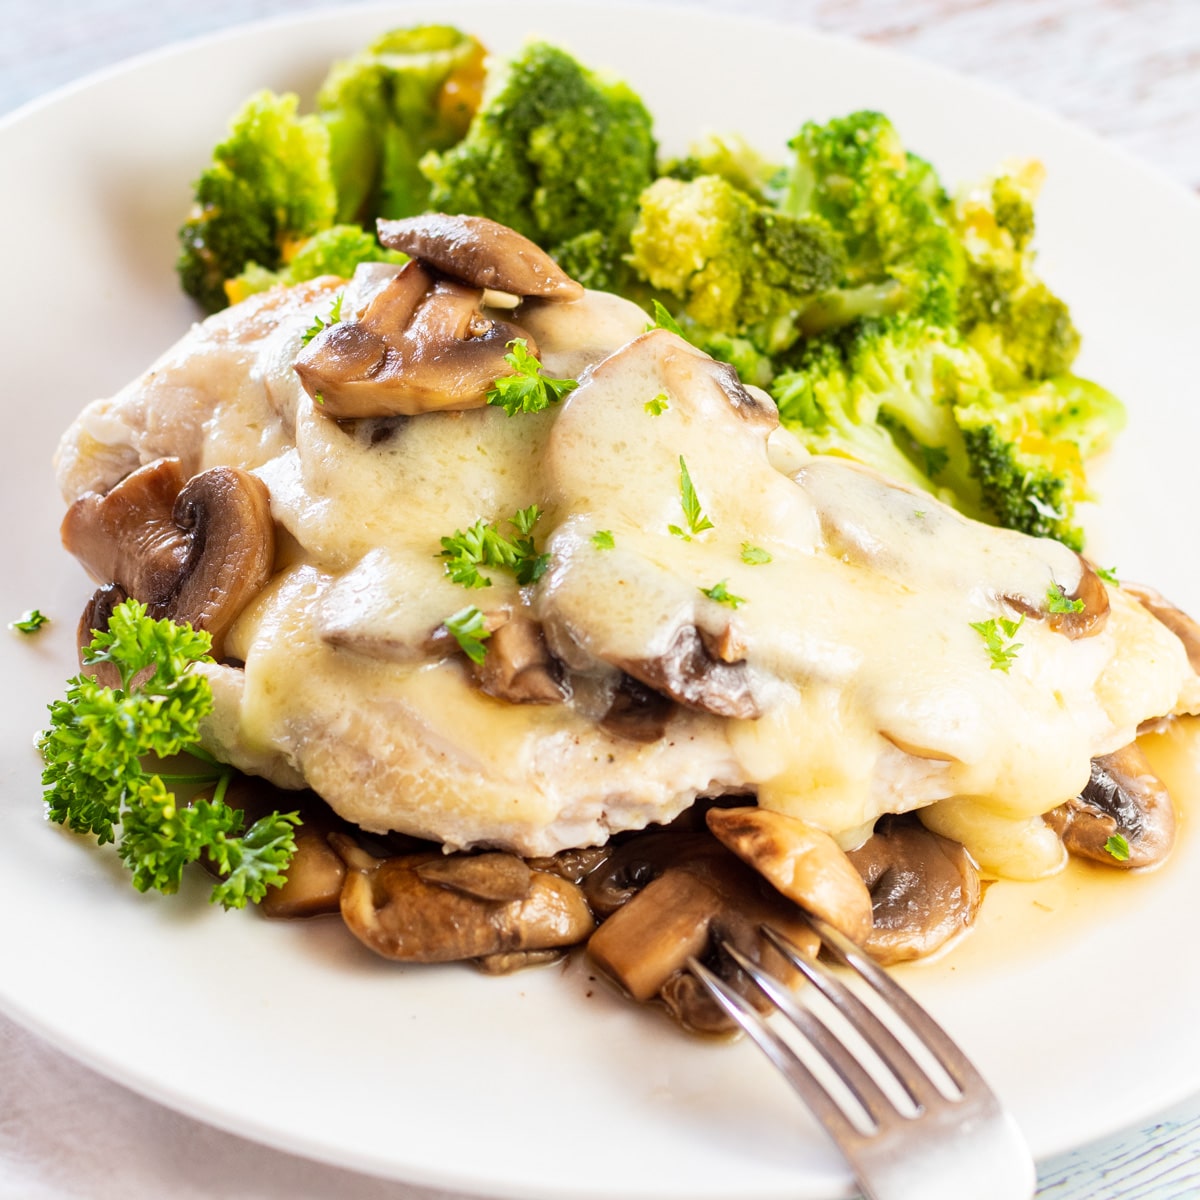 Le poulet suisse aux champignons tendre et savoureux est servi sur plus de champignons sautés sur une assiette blanche.